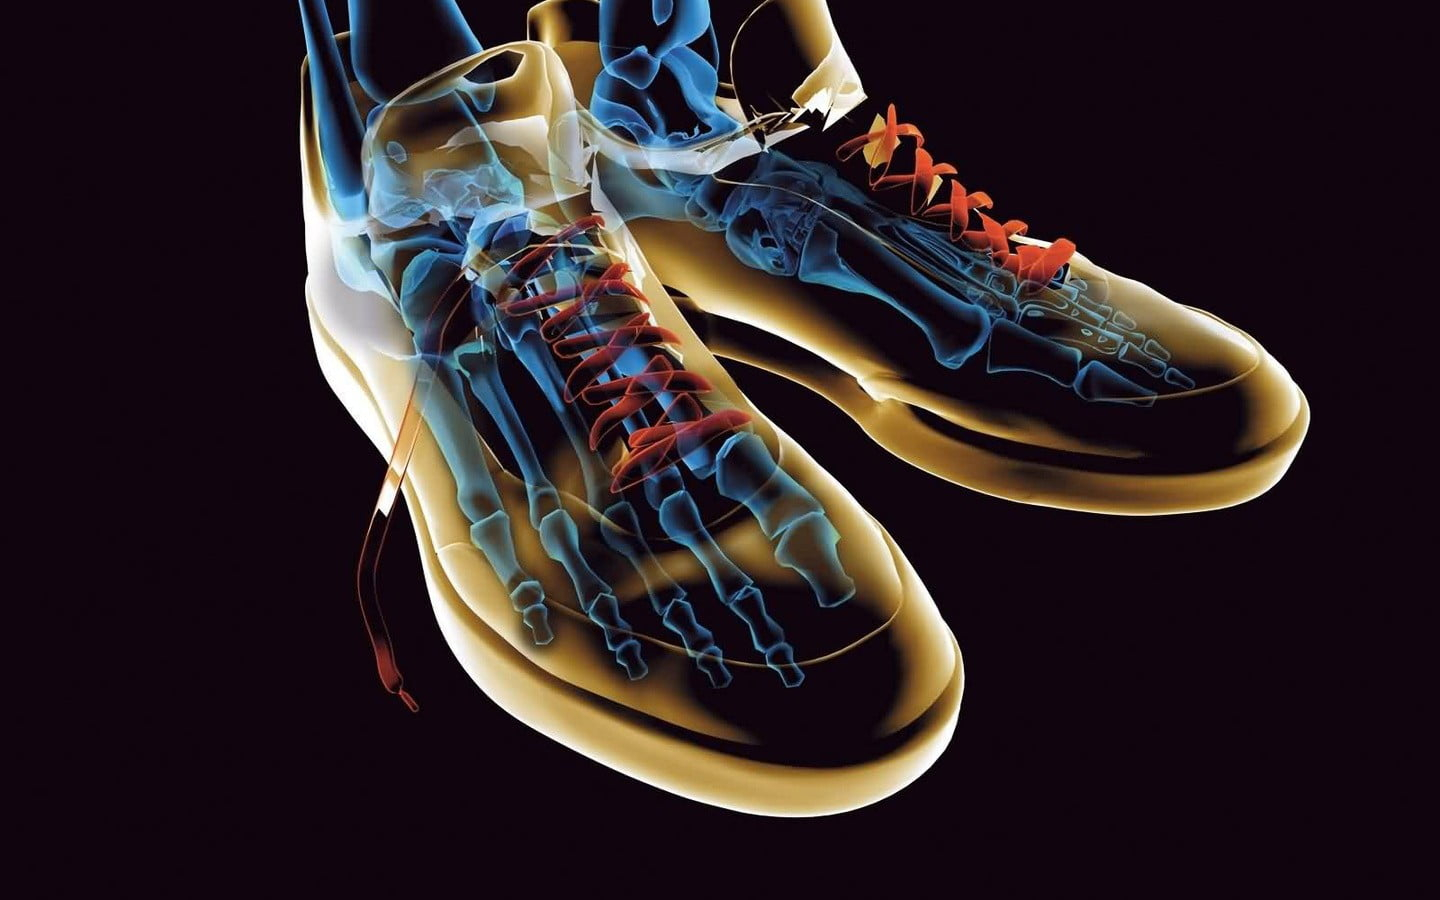 Pair of brown low-top sneakers artwork, simple background, digital art